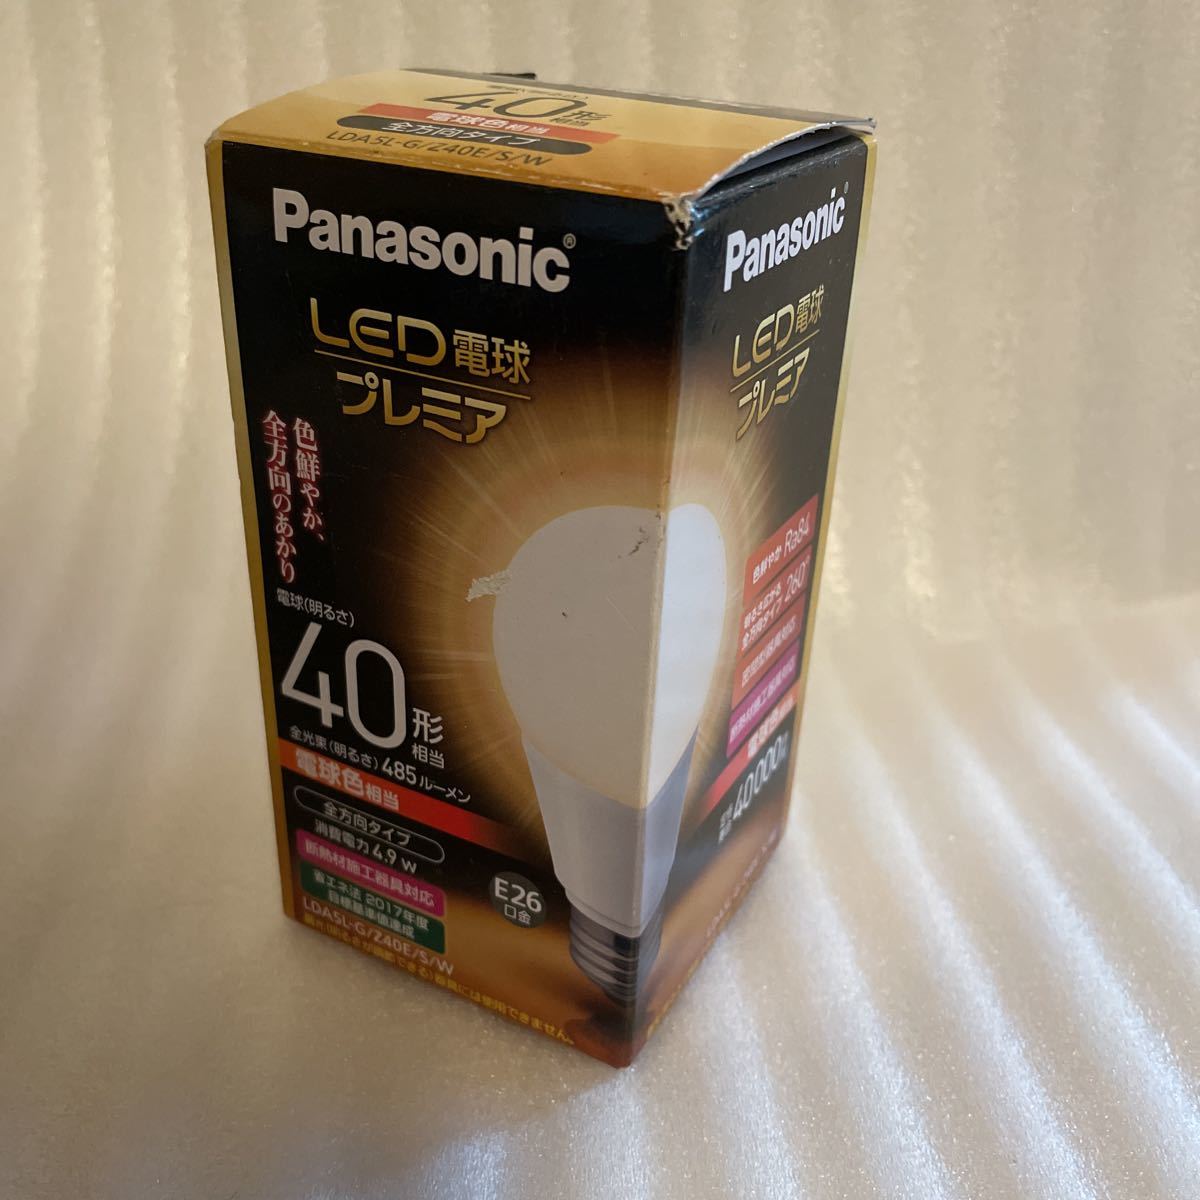 新品未使用品 Panasonic パナソニック LED電球 プレミア 電球色 40形相当 485lm ルーメン 4.9w ワット E26口金_画像1